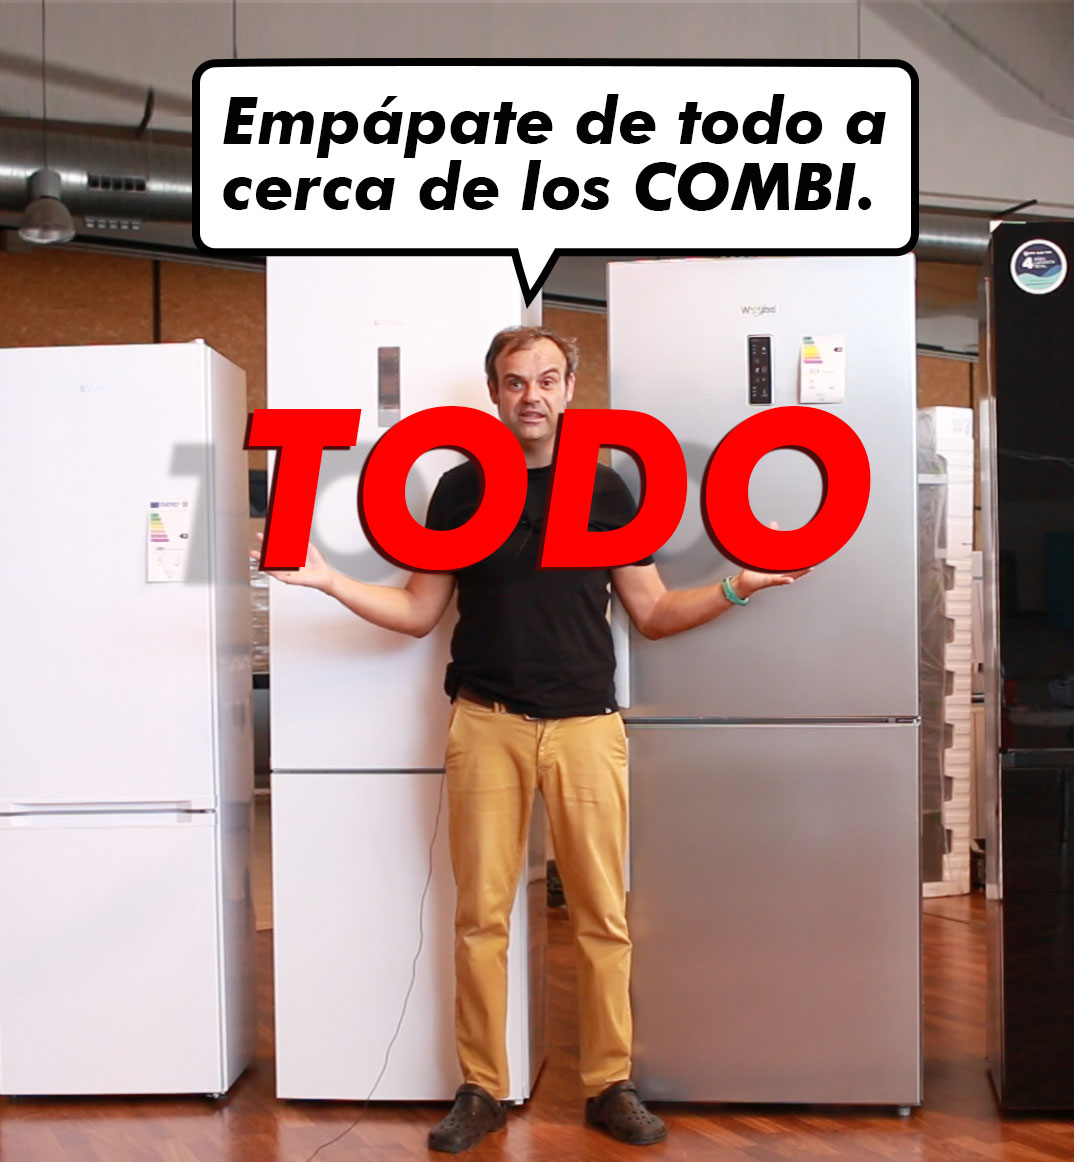 frigorífico de 4 puertas y 60 cm de ancho de Corberó - Marrón y Blanco